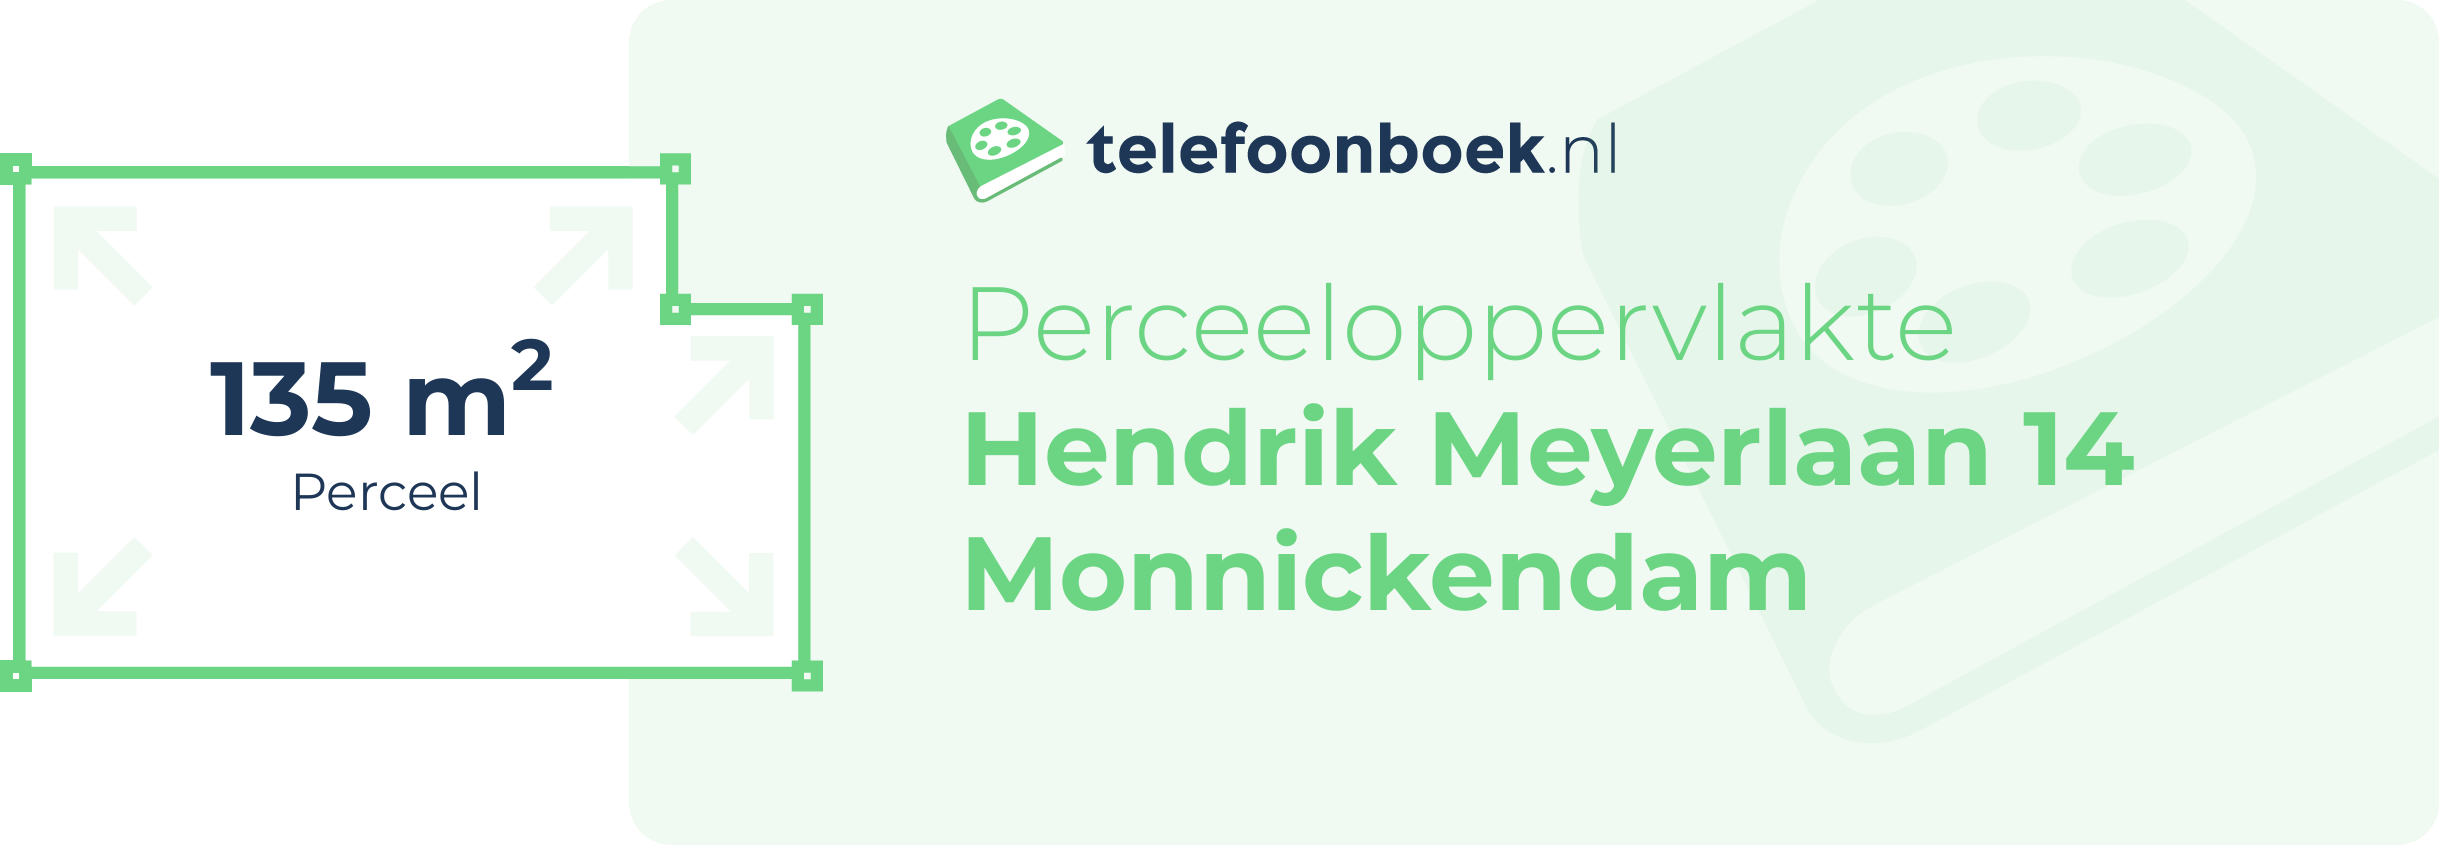 Perceeloppervlakte Hendrik Meyerlaan 14 Monnickendam